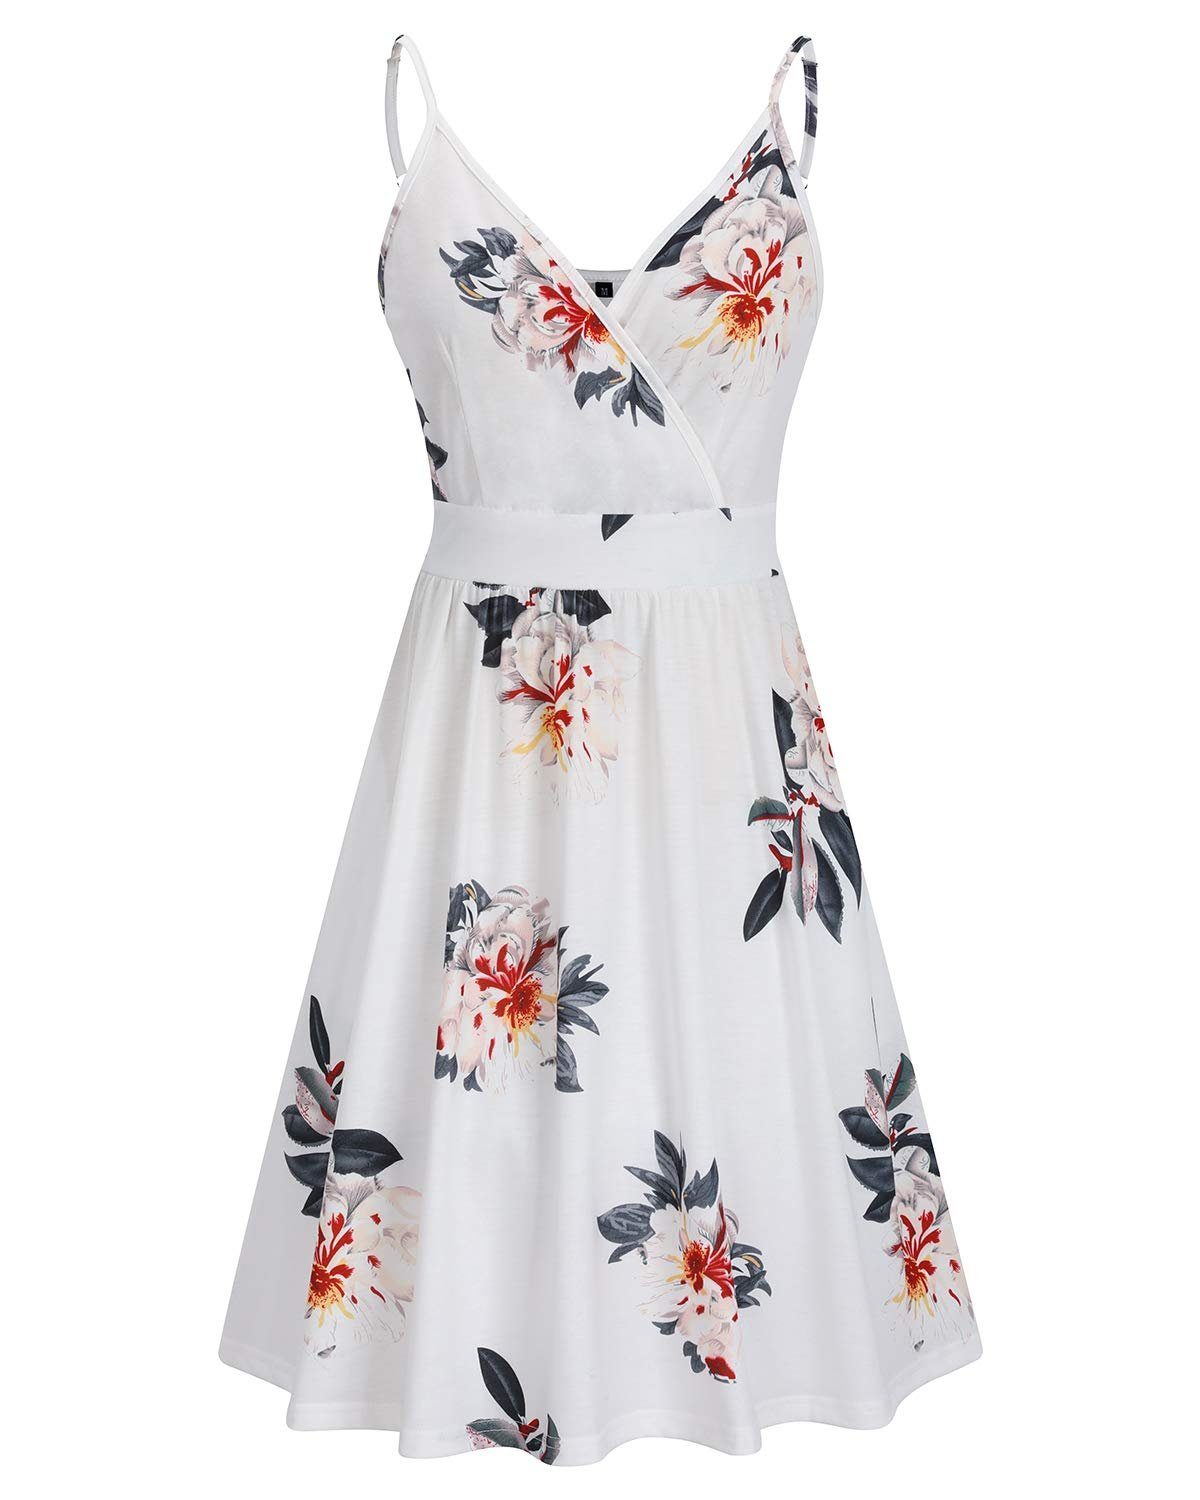 OTGFNN21S234 Damen mit Midilänge V-Ausschnitt G4Free Sommerkleid Vintage Sommer Kleid Strandkleid Weiß-NN234A Kleider Tank Ärmelloses Taschen Blumen